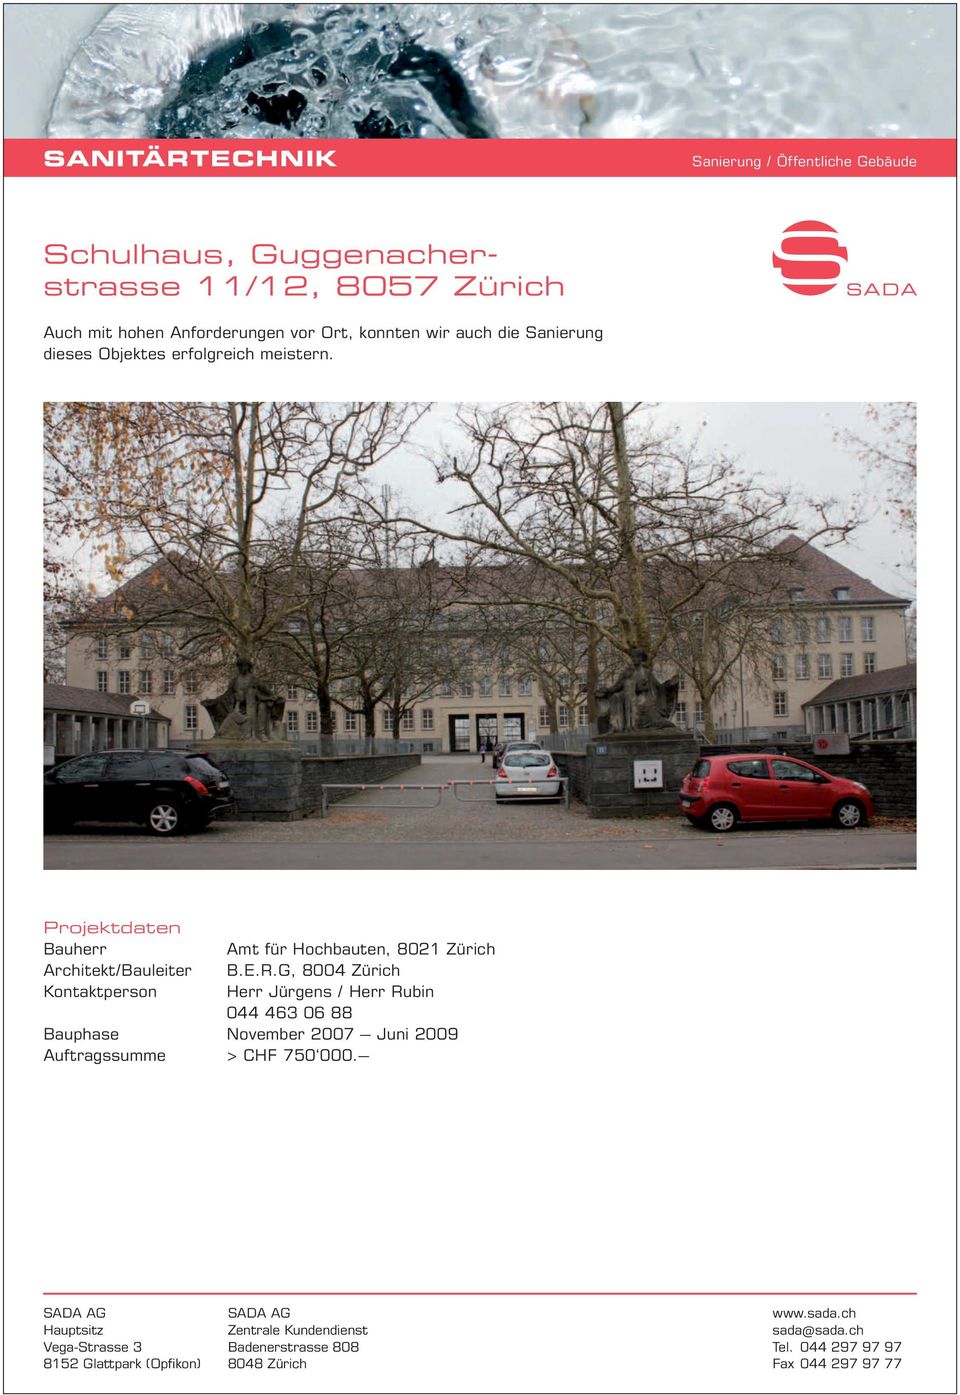 meistern. Amt für Hochbauten, 8021 Zürich Architekt/Bauleiter B.E.R.